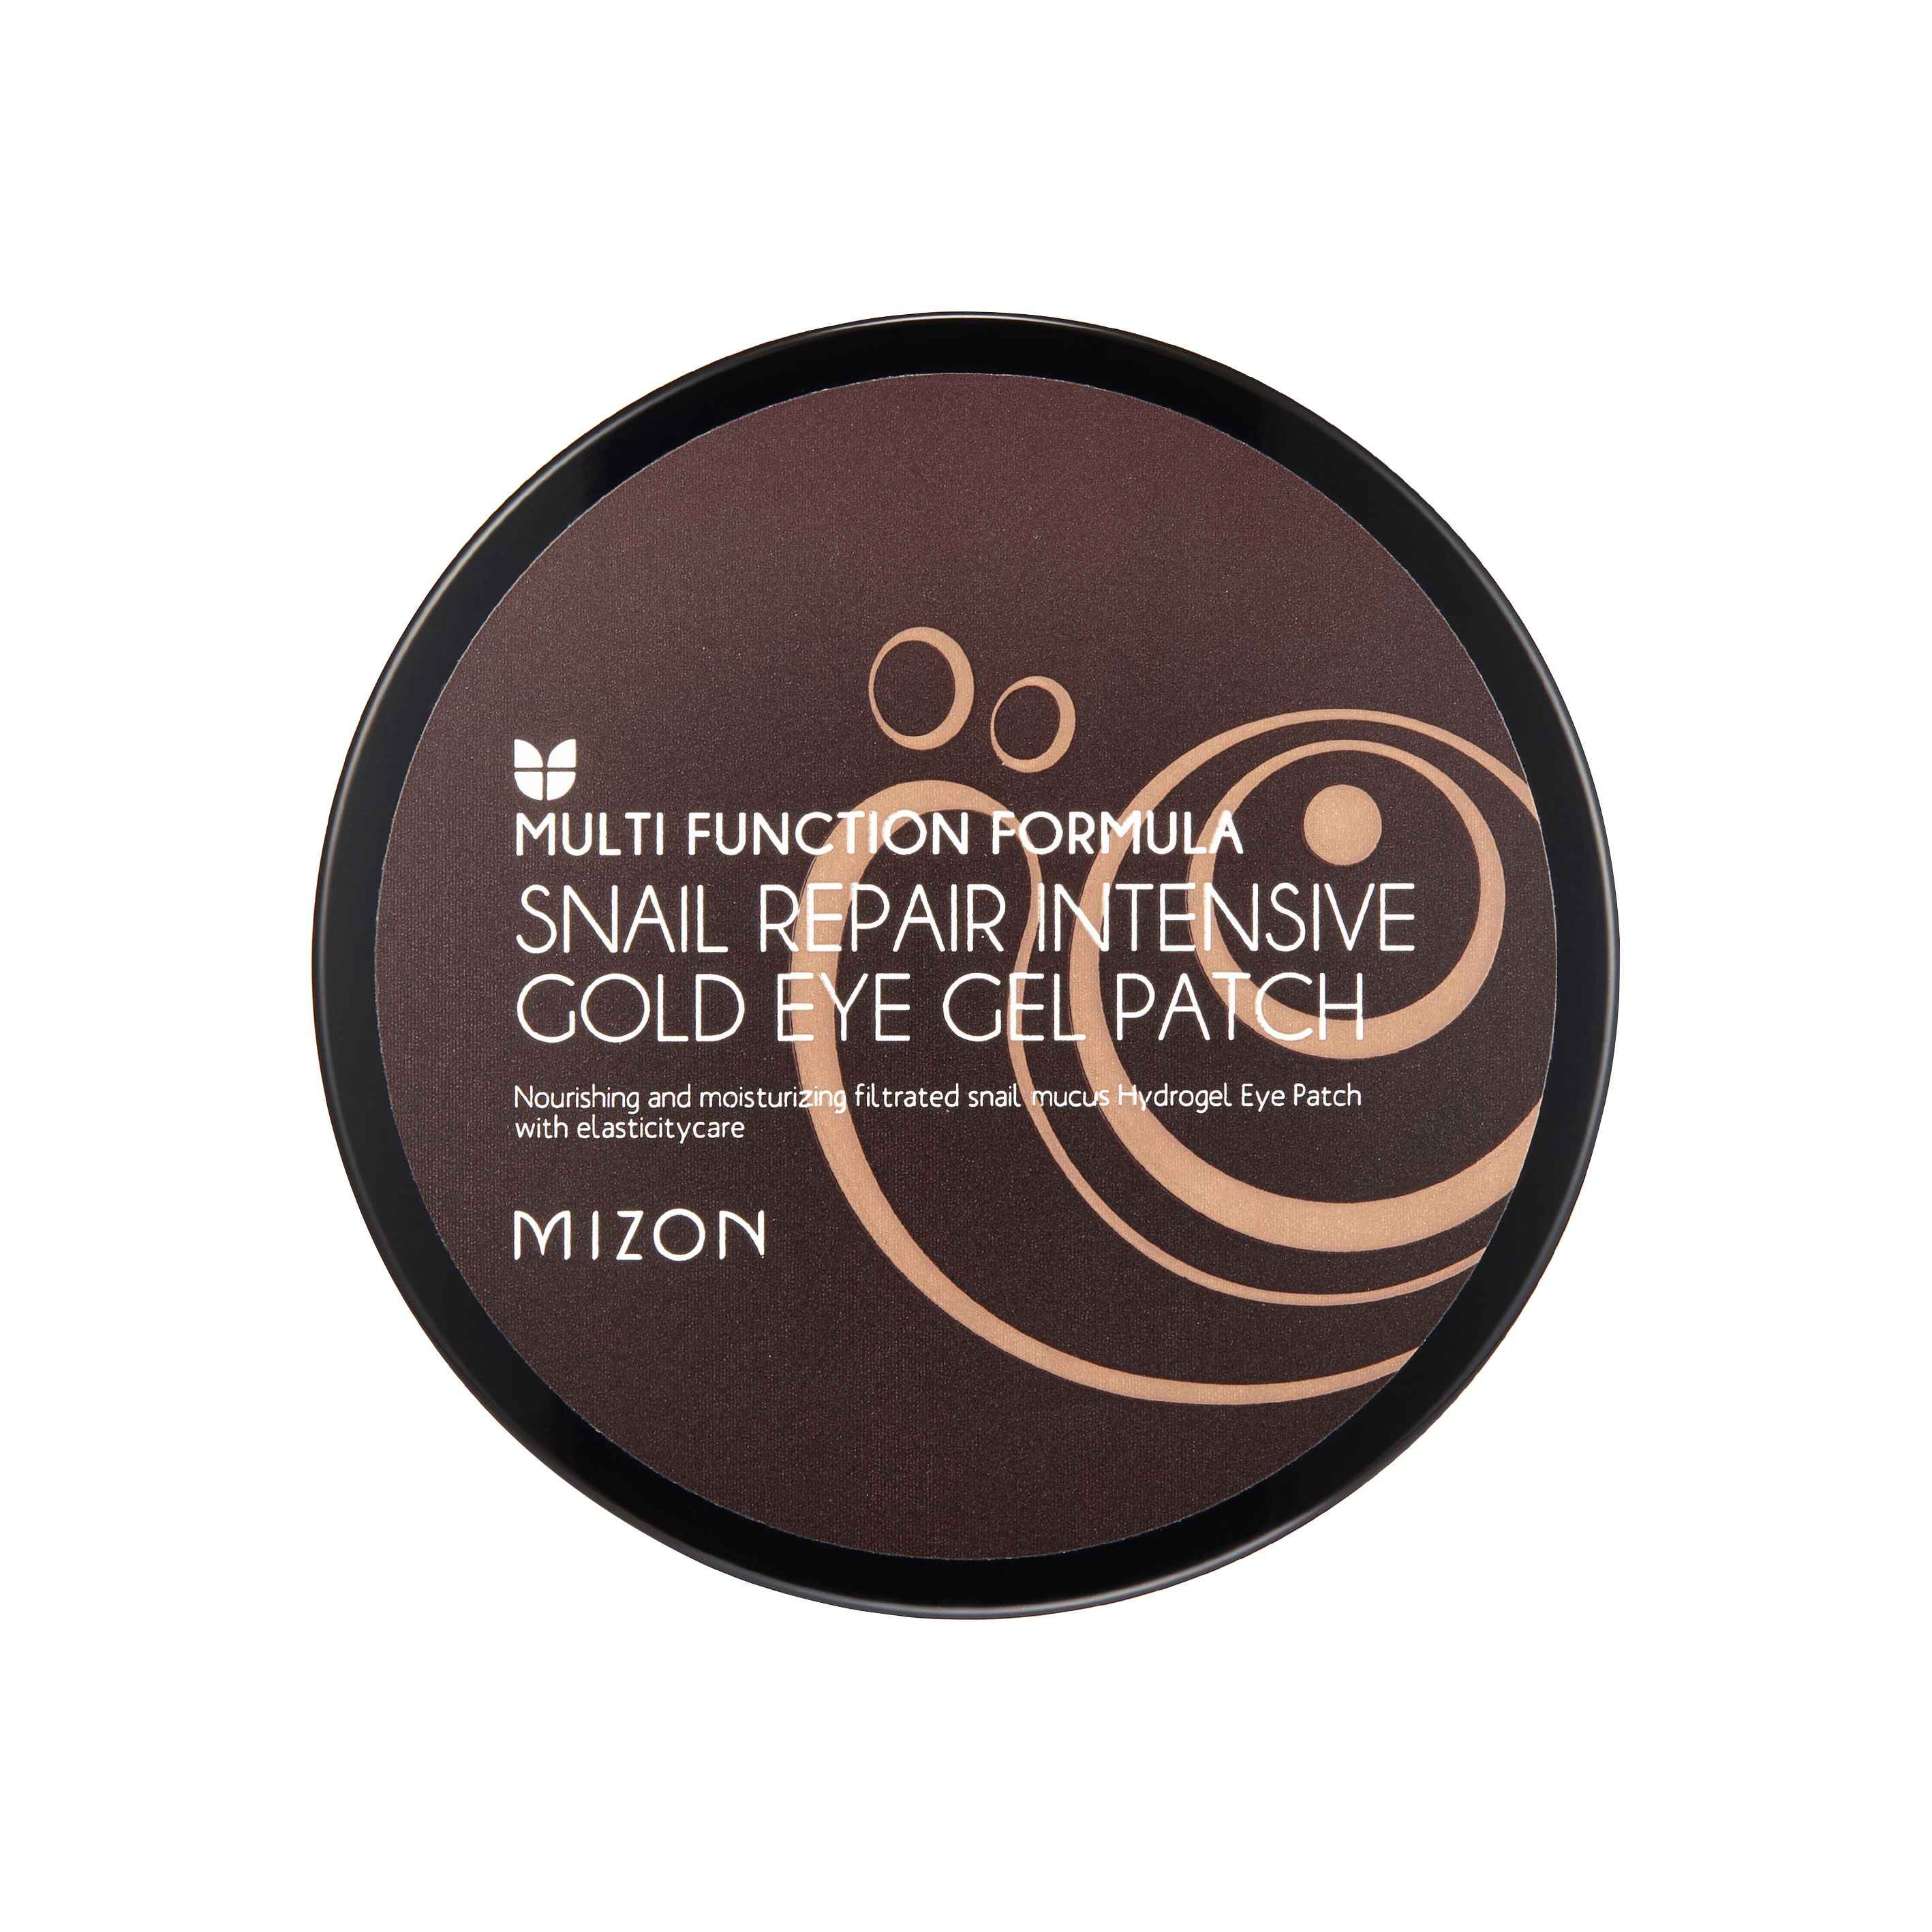 Mizon Snail Repair Intensive Gold Eye Gel Patch 90 g  60 pcs